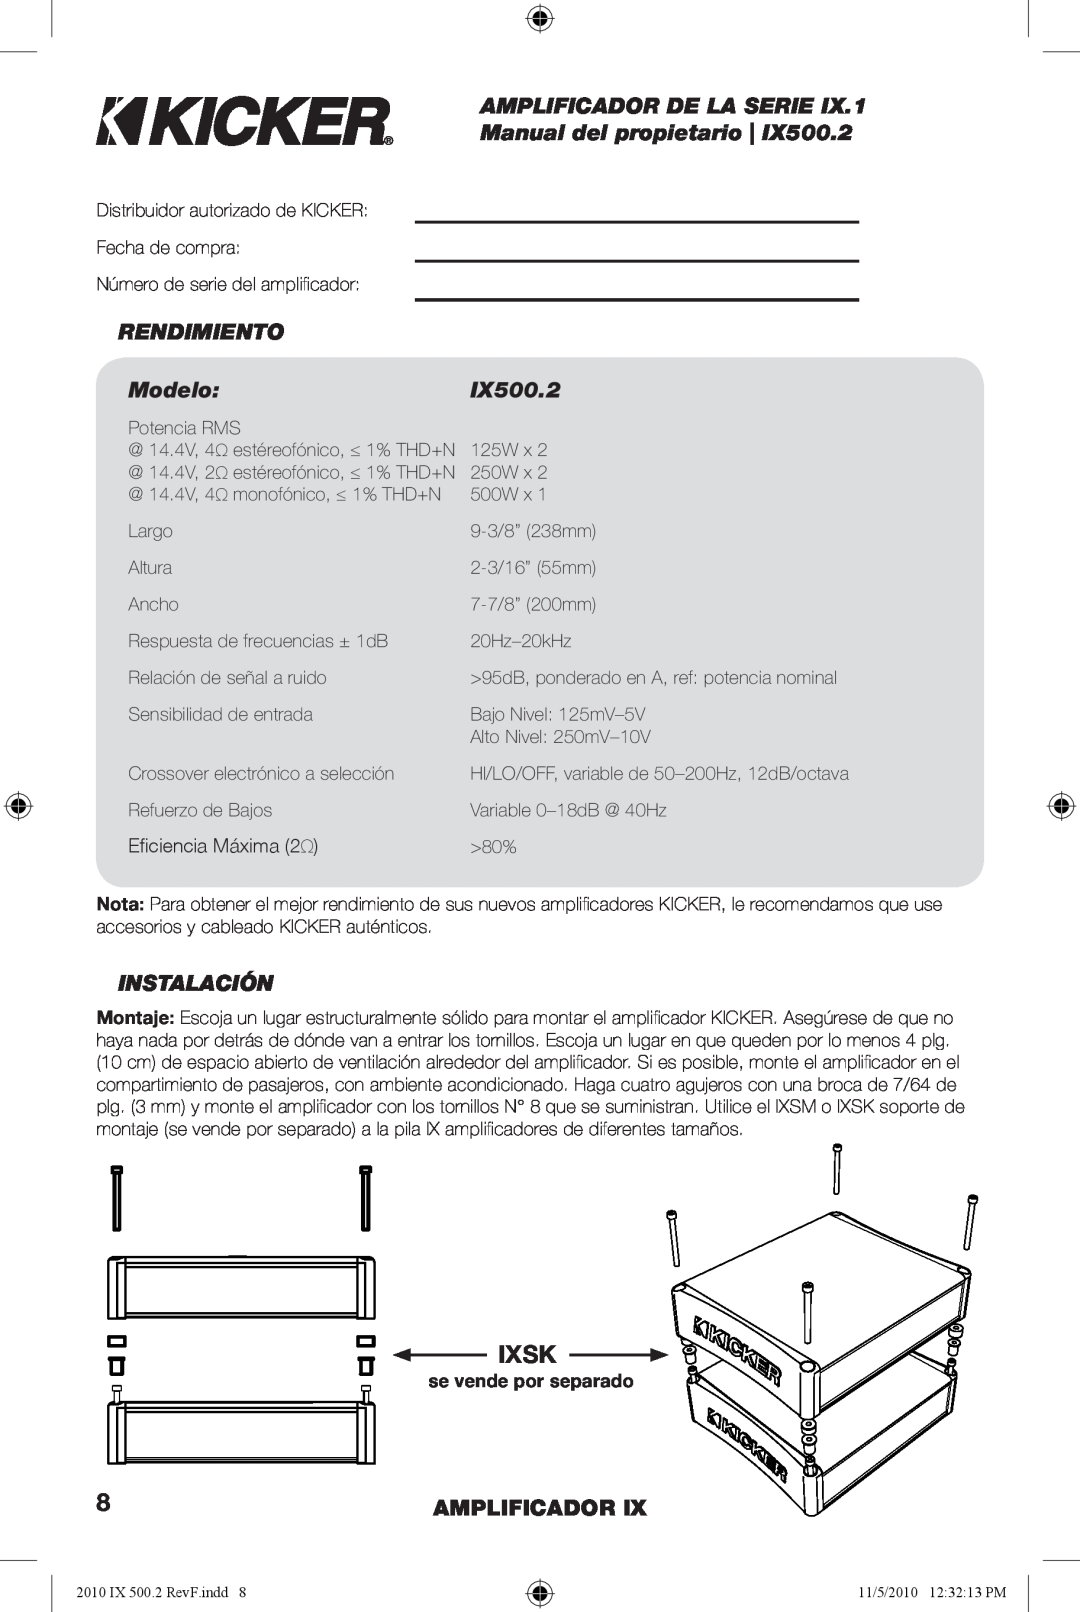 Kicker IX500.2 manual AMPLIFICADOR DE LA SERIE Manual del propietario, RENDIMIENTO Modelo, Instalación, Amplificador, Ixsk 